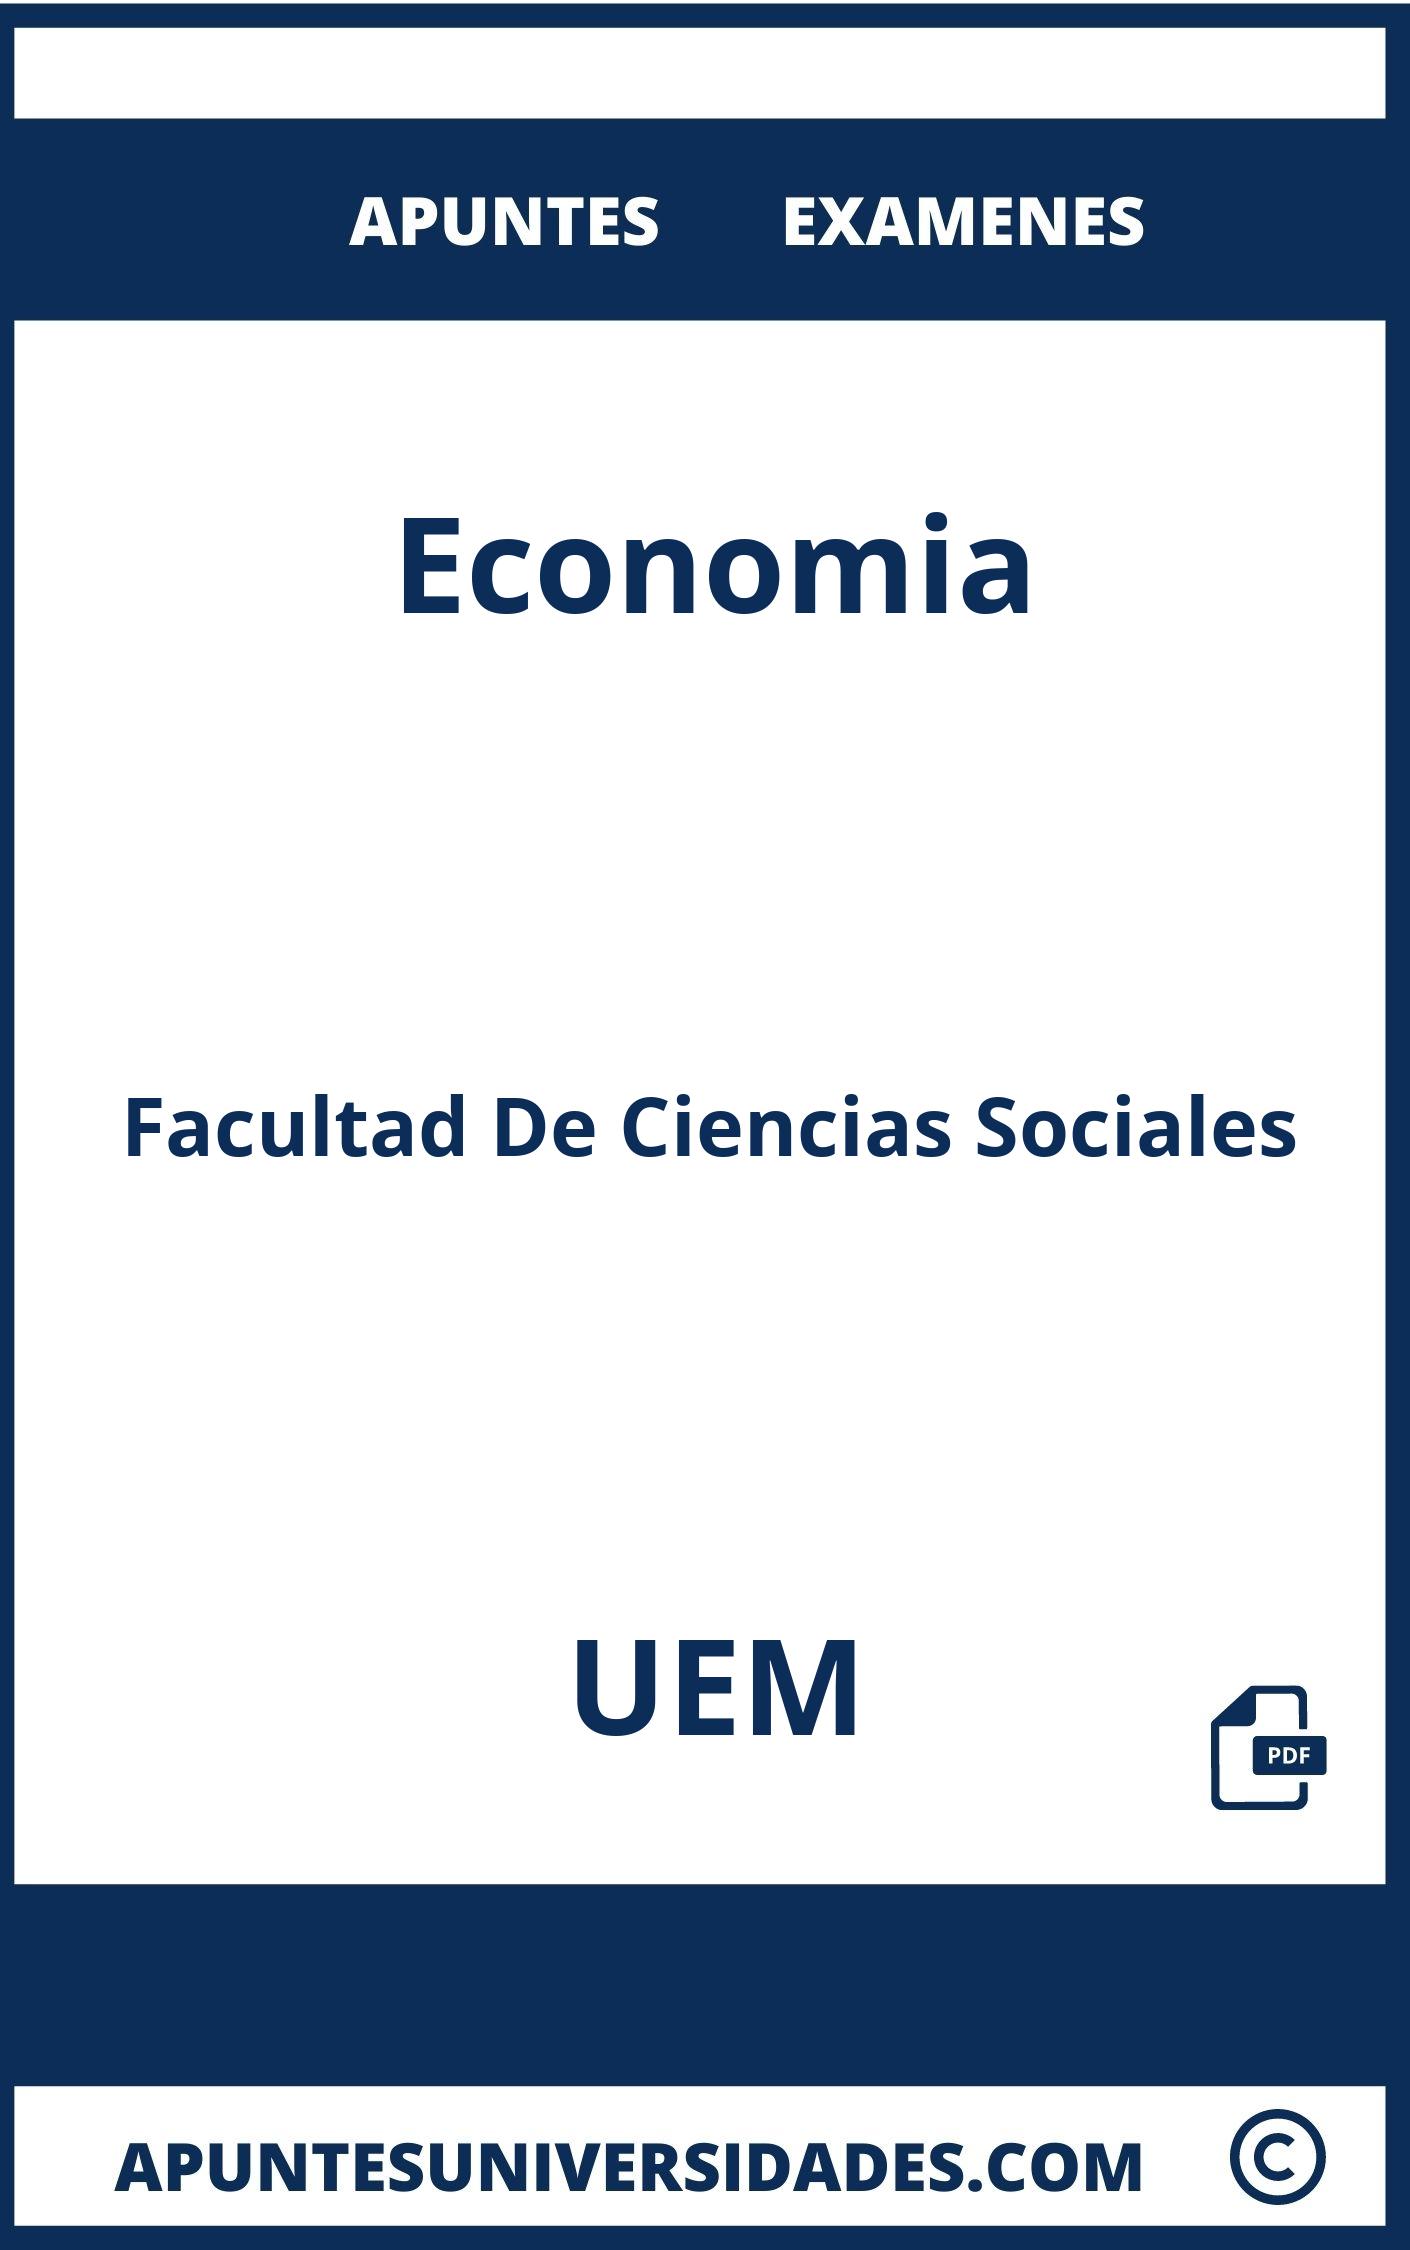 Apuntes Examenes Economia UEM